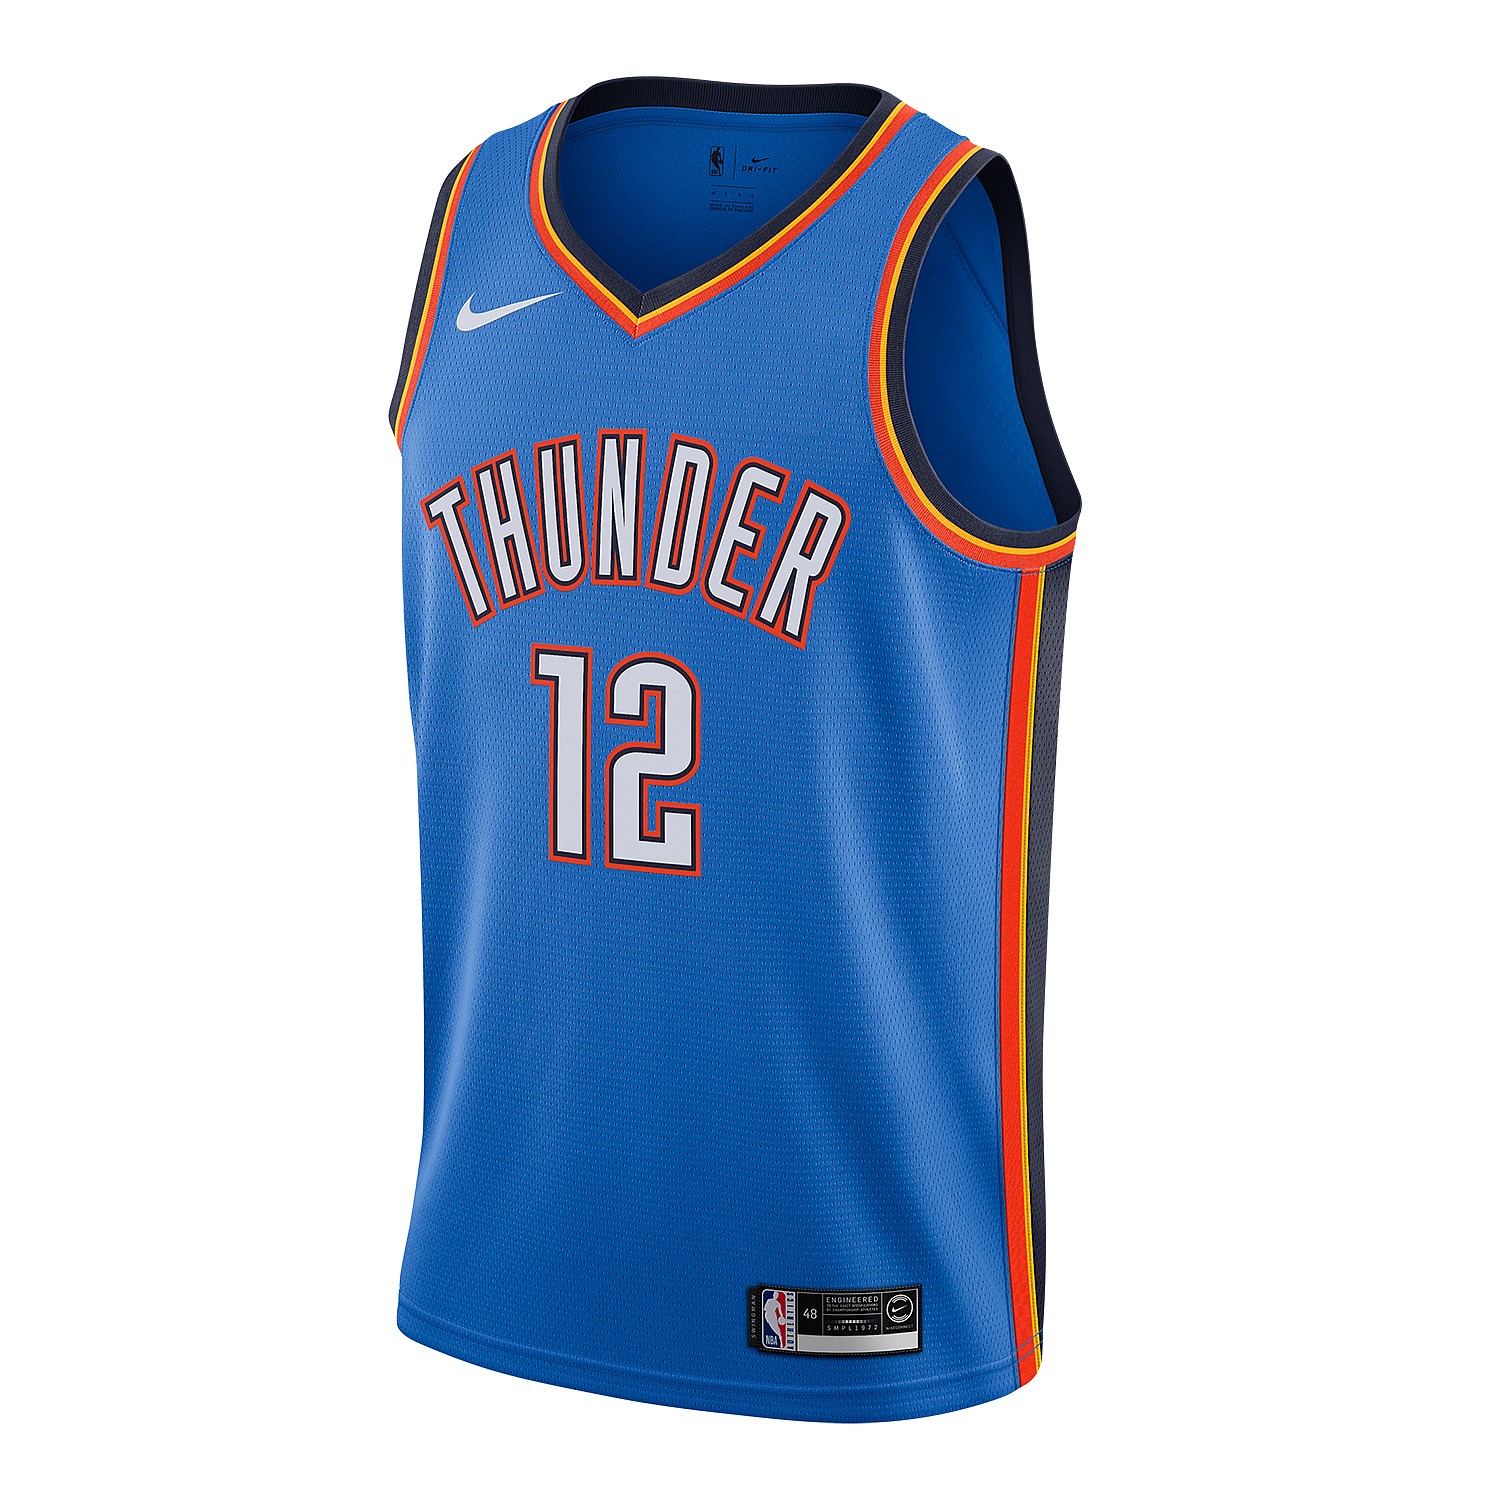 Oklahoma City Thunder NBA Jersey 